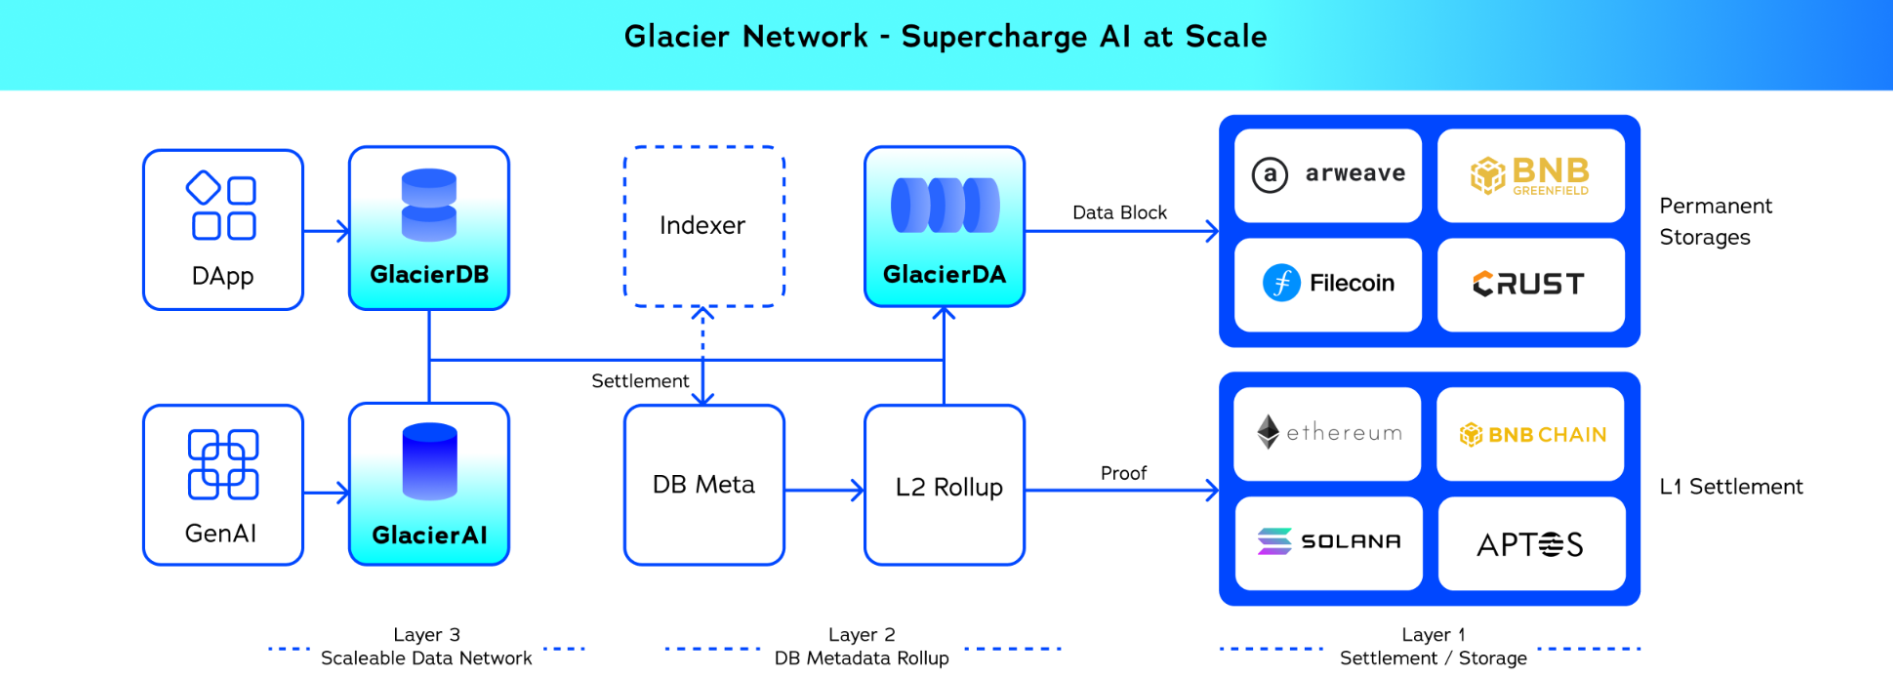 Glacier Network